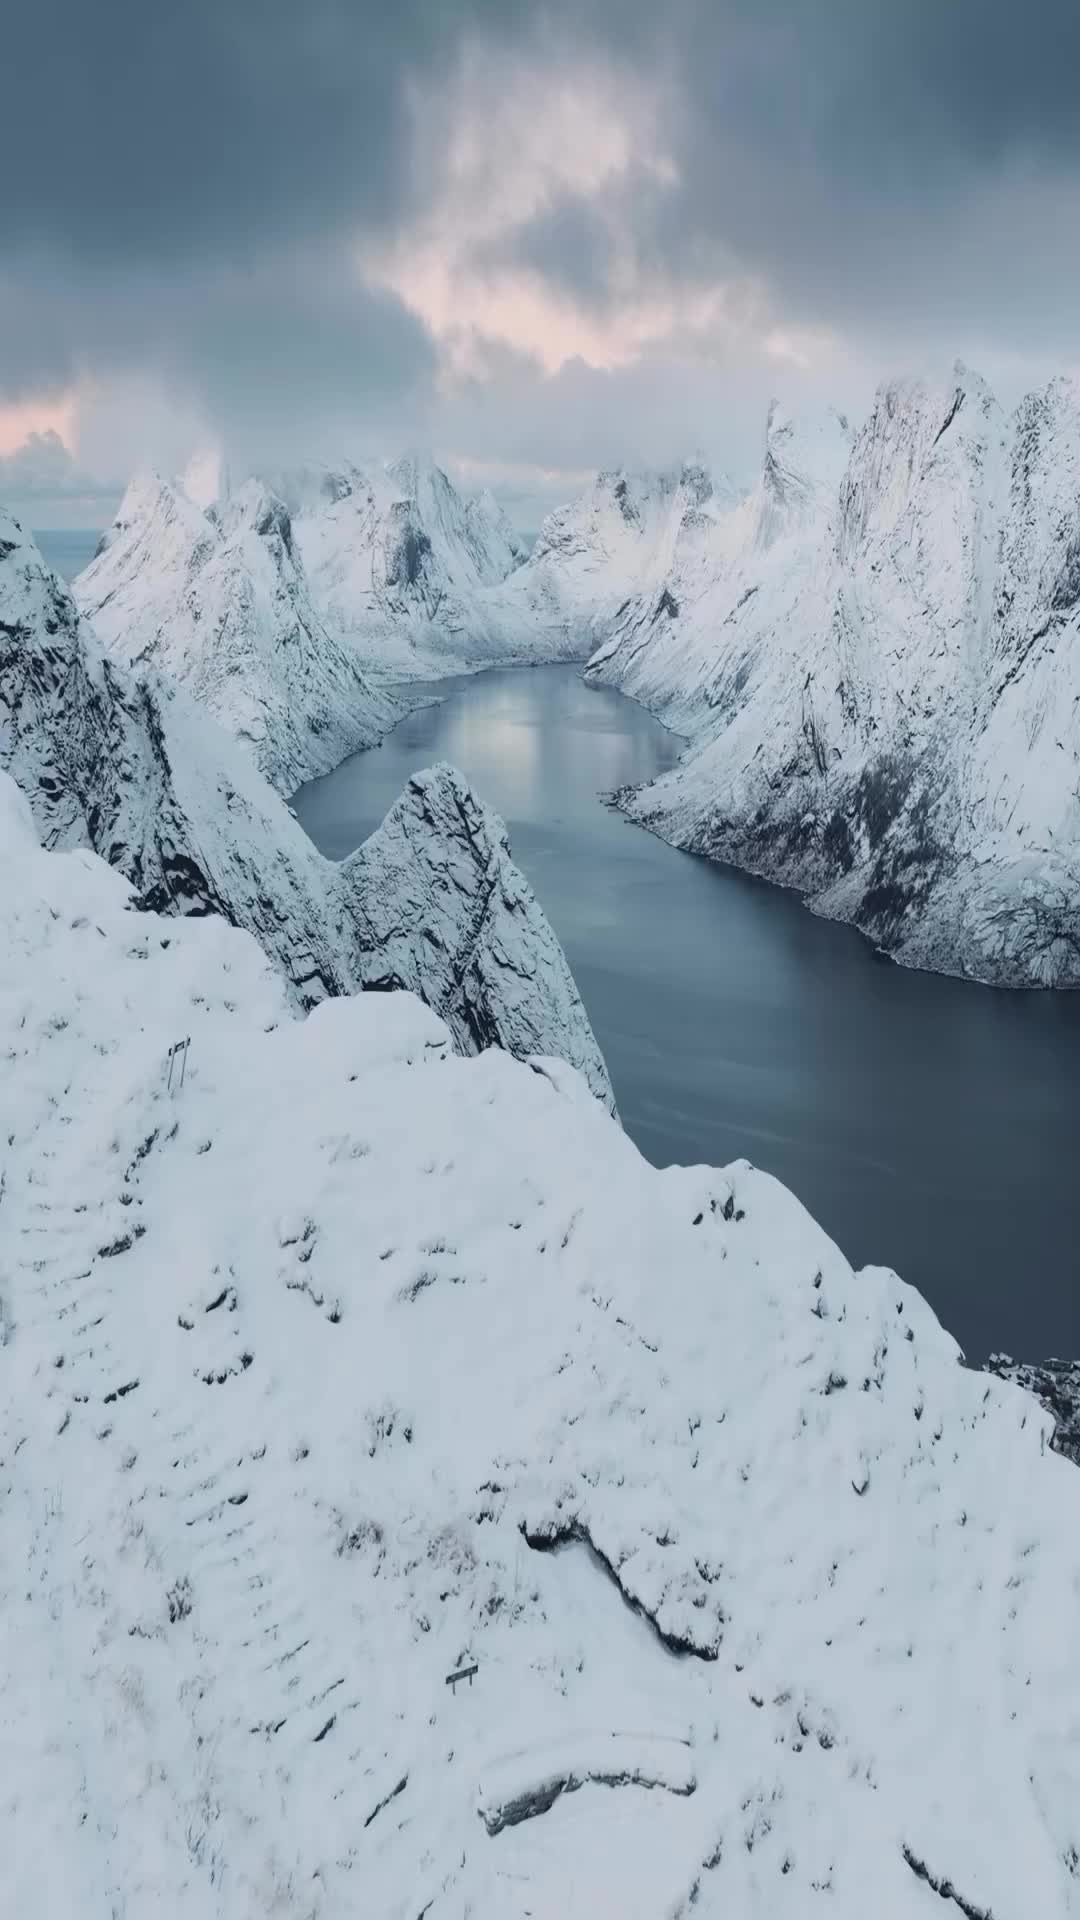 Stunning Winter Views from Reinebringen, Lofoten